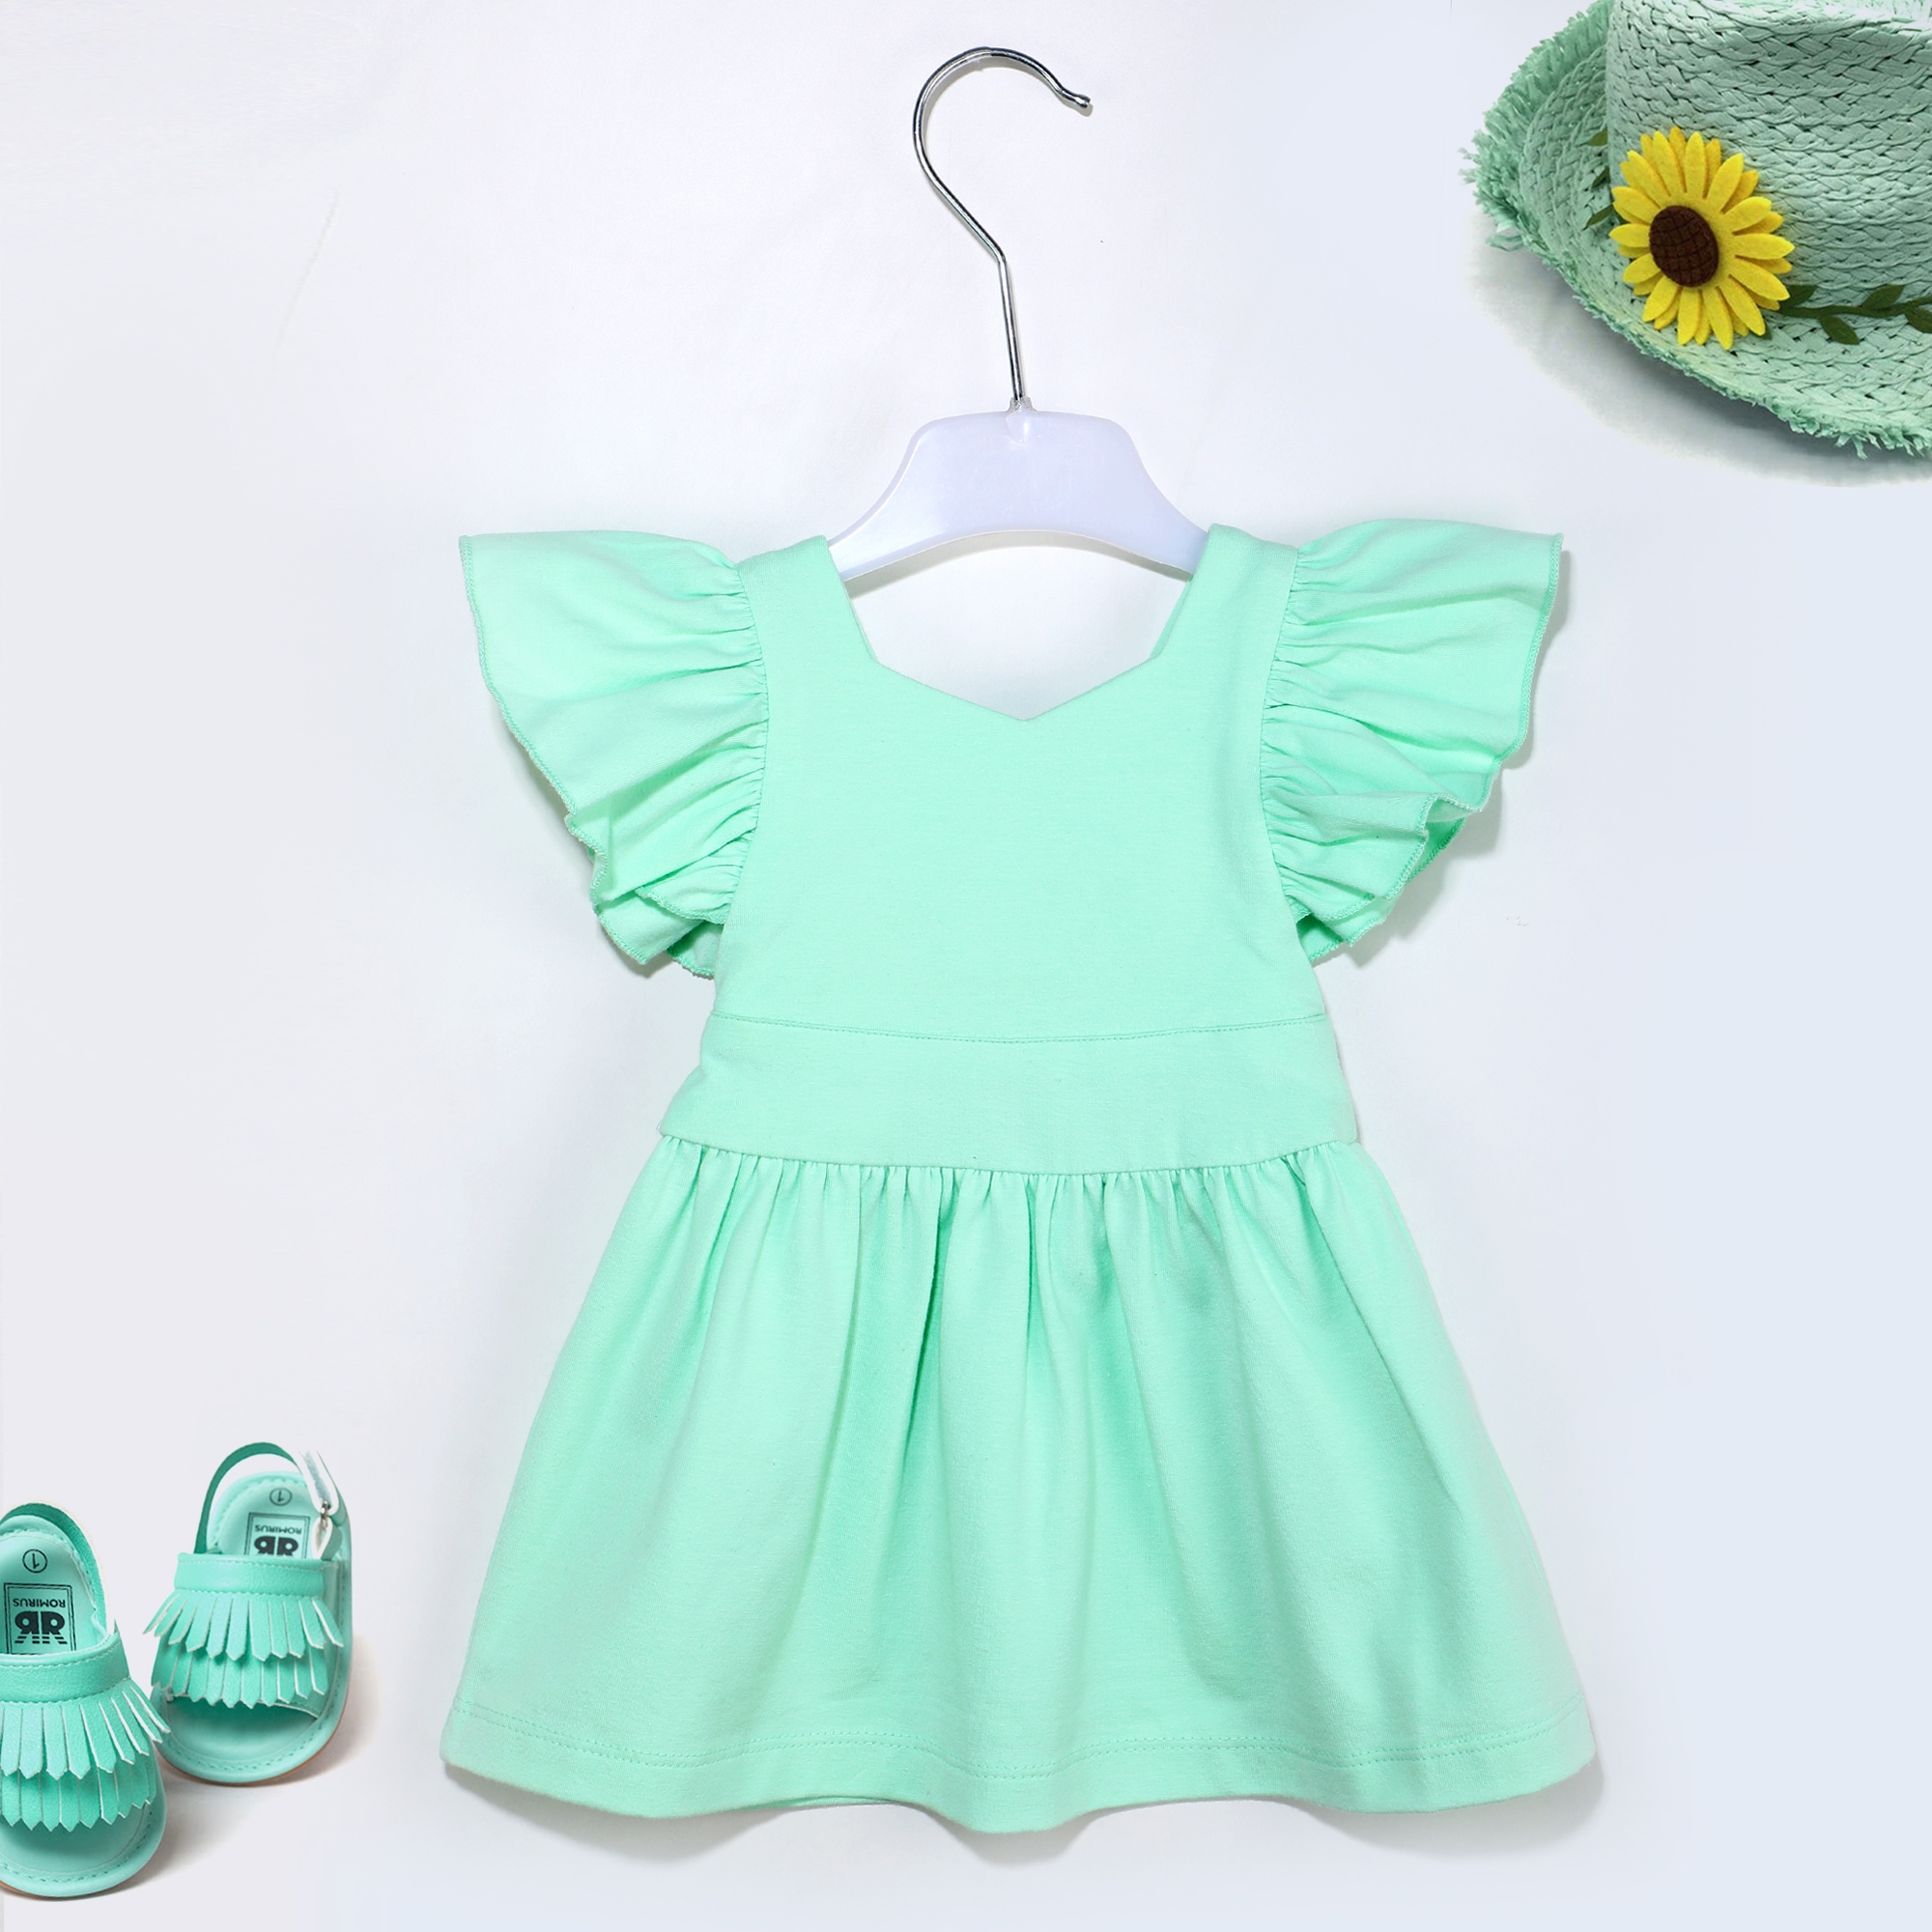 Kidbea | Kidbea® New Born Baby'S Girl Green Color Knee Length Dress